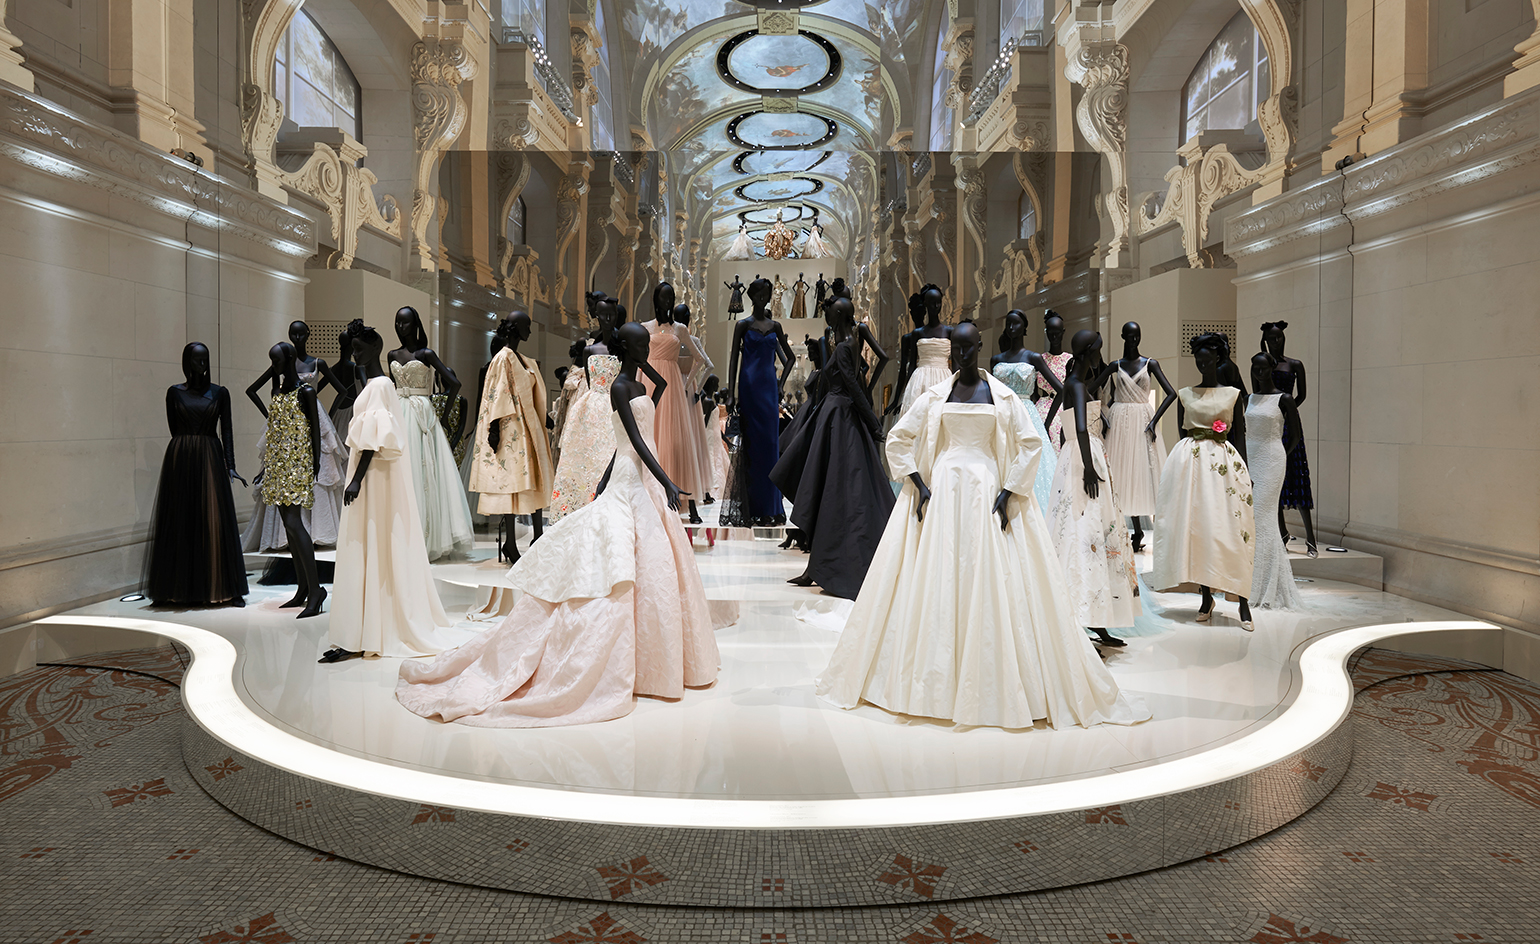 EstiloMarques_Exposicion-Dior-Museo-Artes-Decorativas-Paris-maniquies